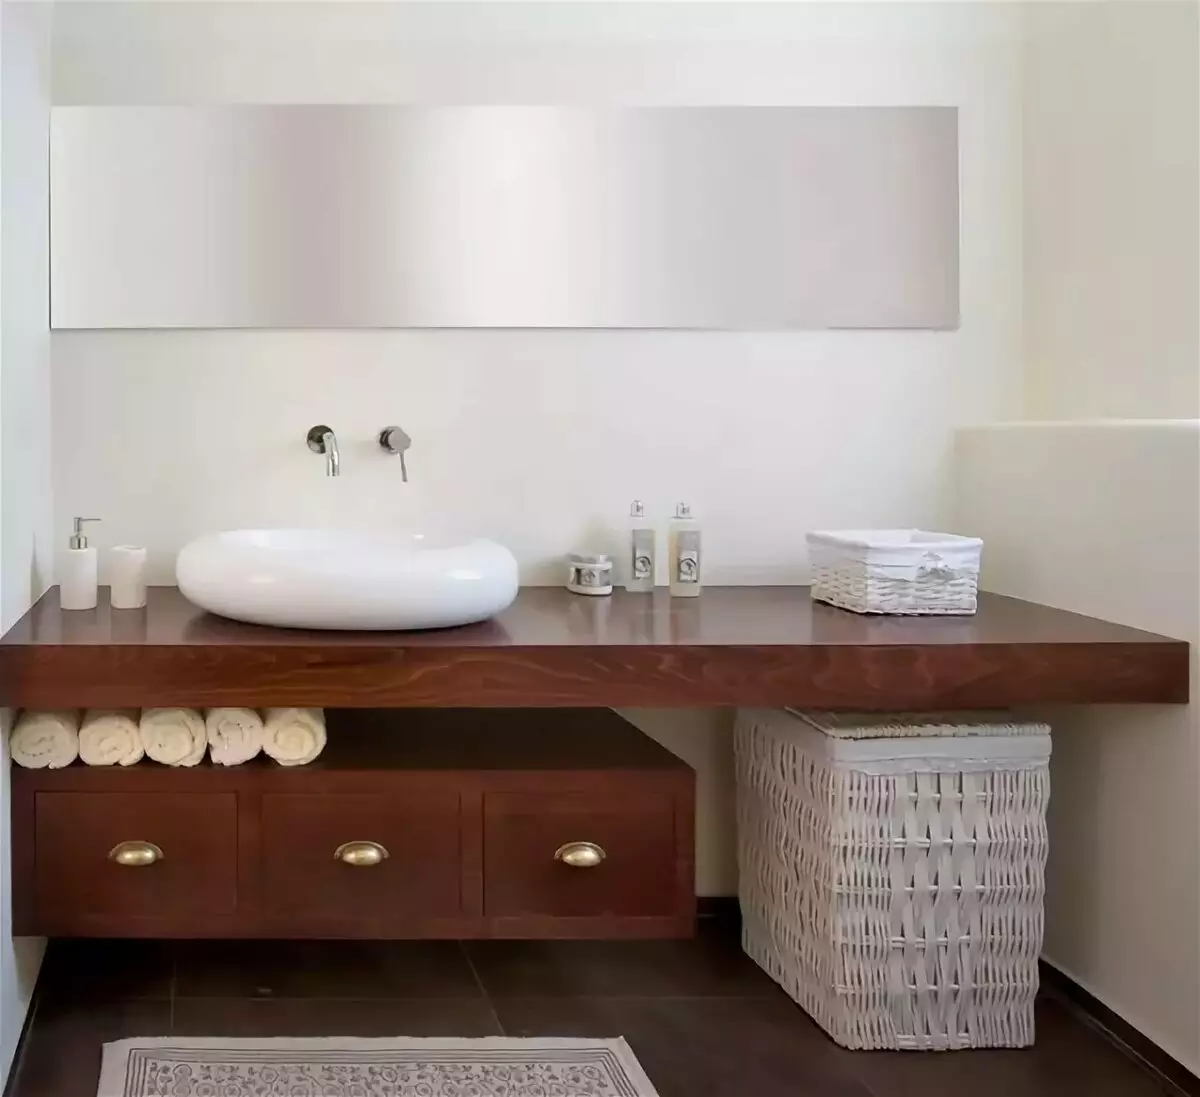 Ванна мебель столешница. Столешница для ванной комнаты. Столешница в ванную под раковину. Столешница под раковину в ванную комнату. Раковина в ванную со столешницей подвесная.